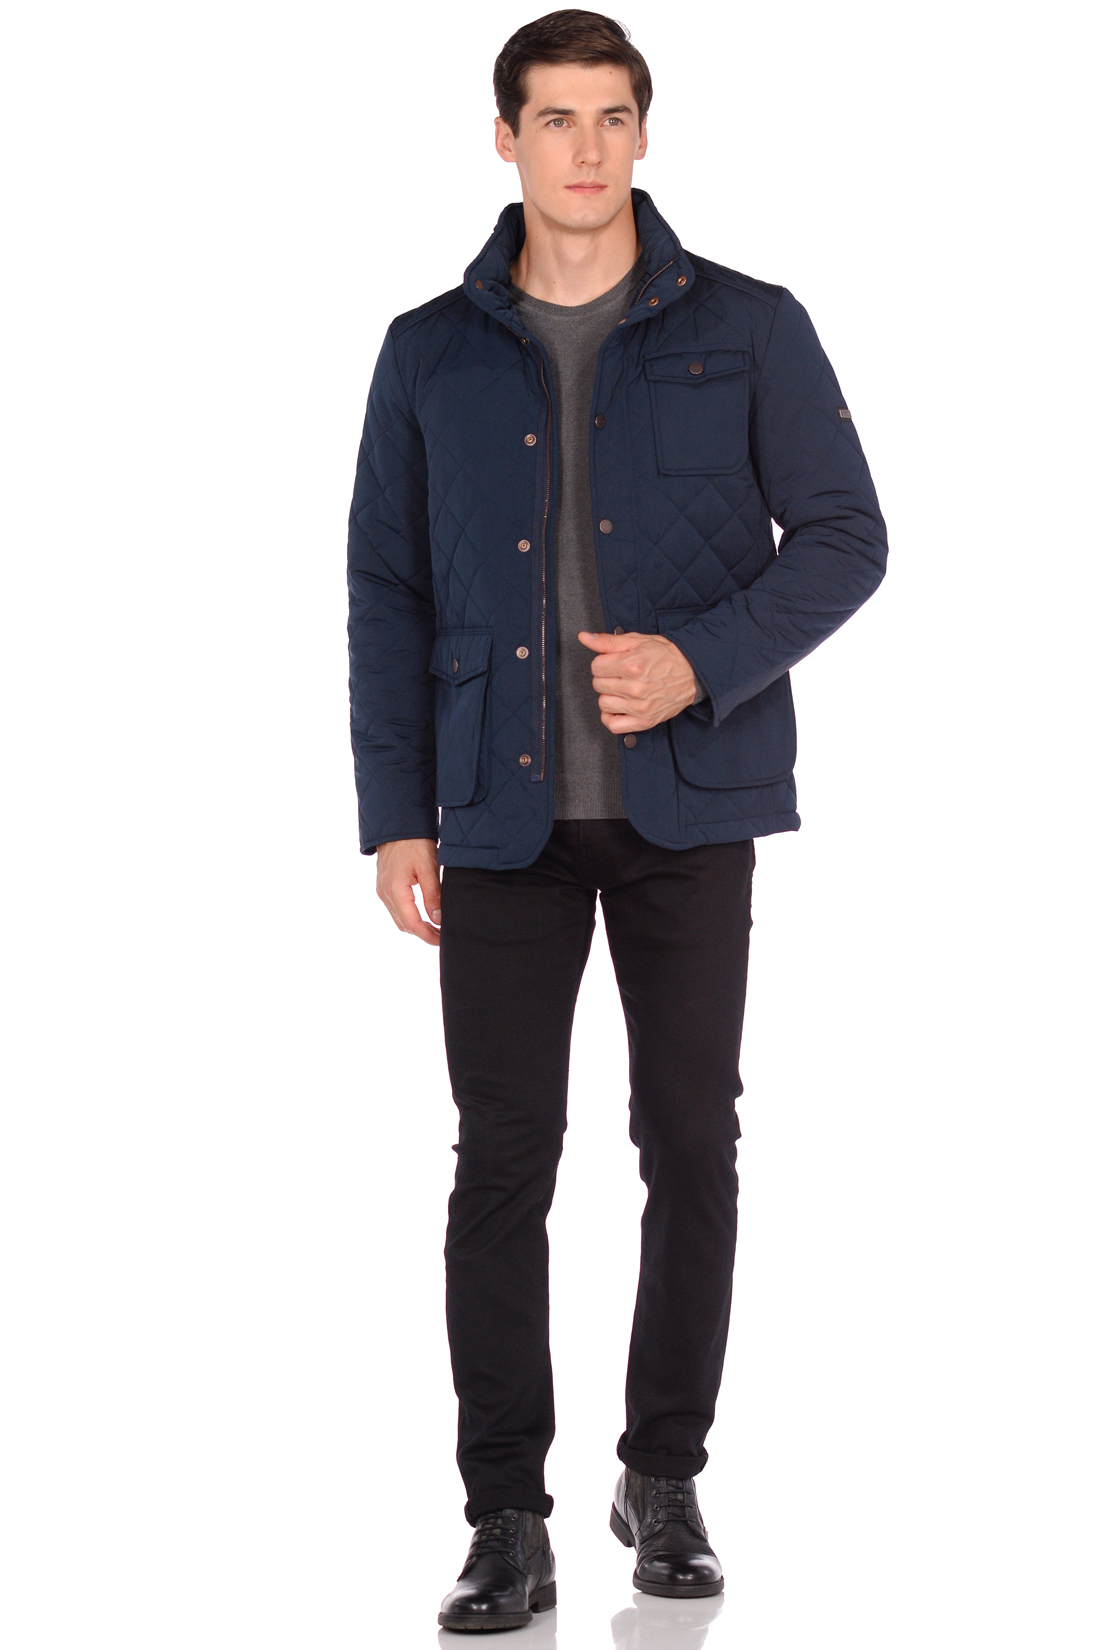 Стёганая куртка с тремя карманами (арт. baon B538503), размер XXL, цвет синий Стёганая куртка с тремя карманами (арт. baon B538503) - фото 3